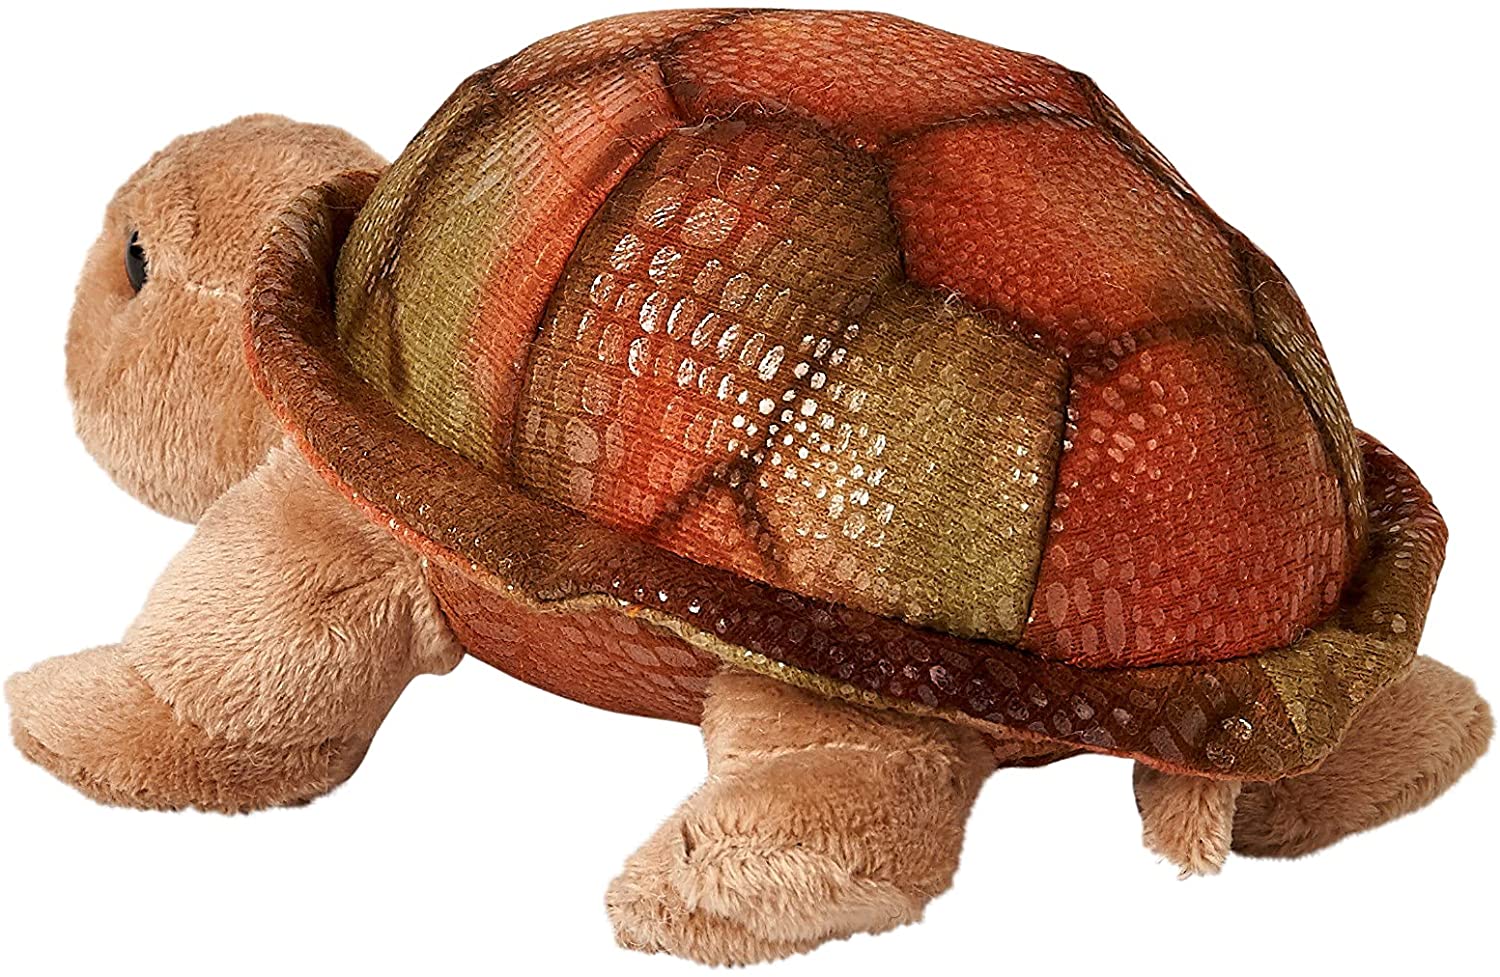  Riesenschildkröte, klein - 21 cm (Länge) - Landschildkröte, Reptil - Plüschtier, Kuscheltier